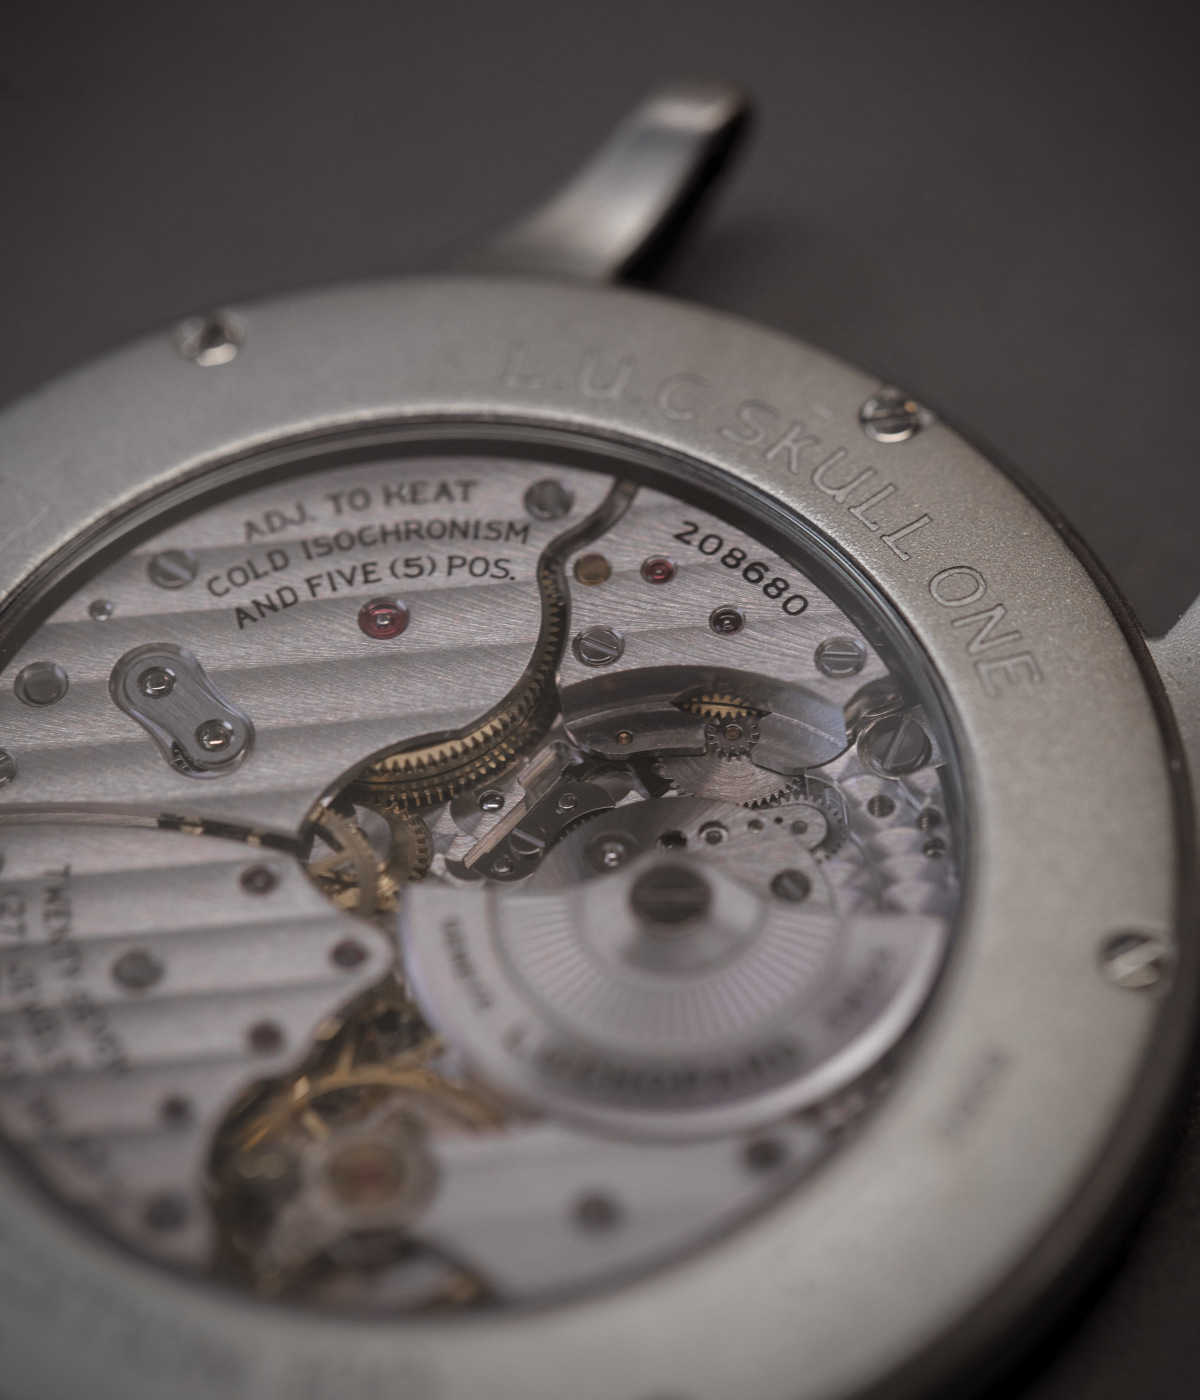 〈ショパール〉の限定時計は
文字盤のスカル顔がとってもユニーク！